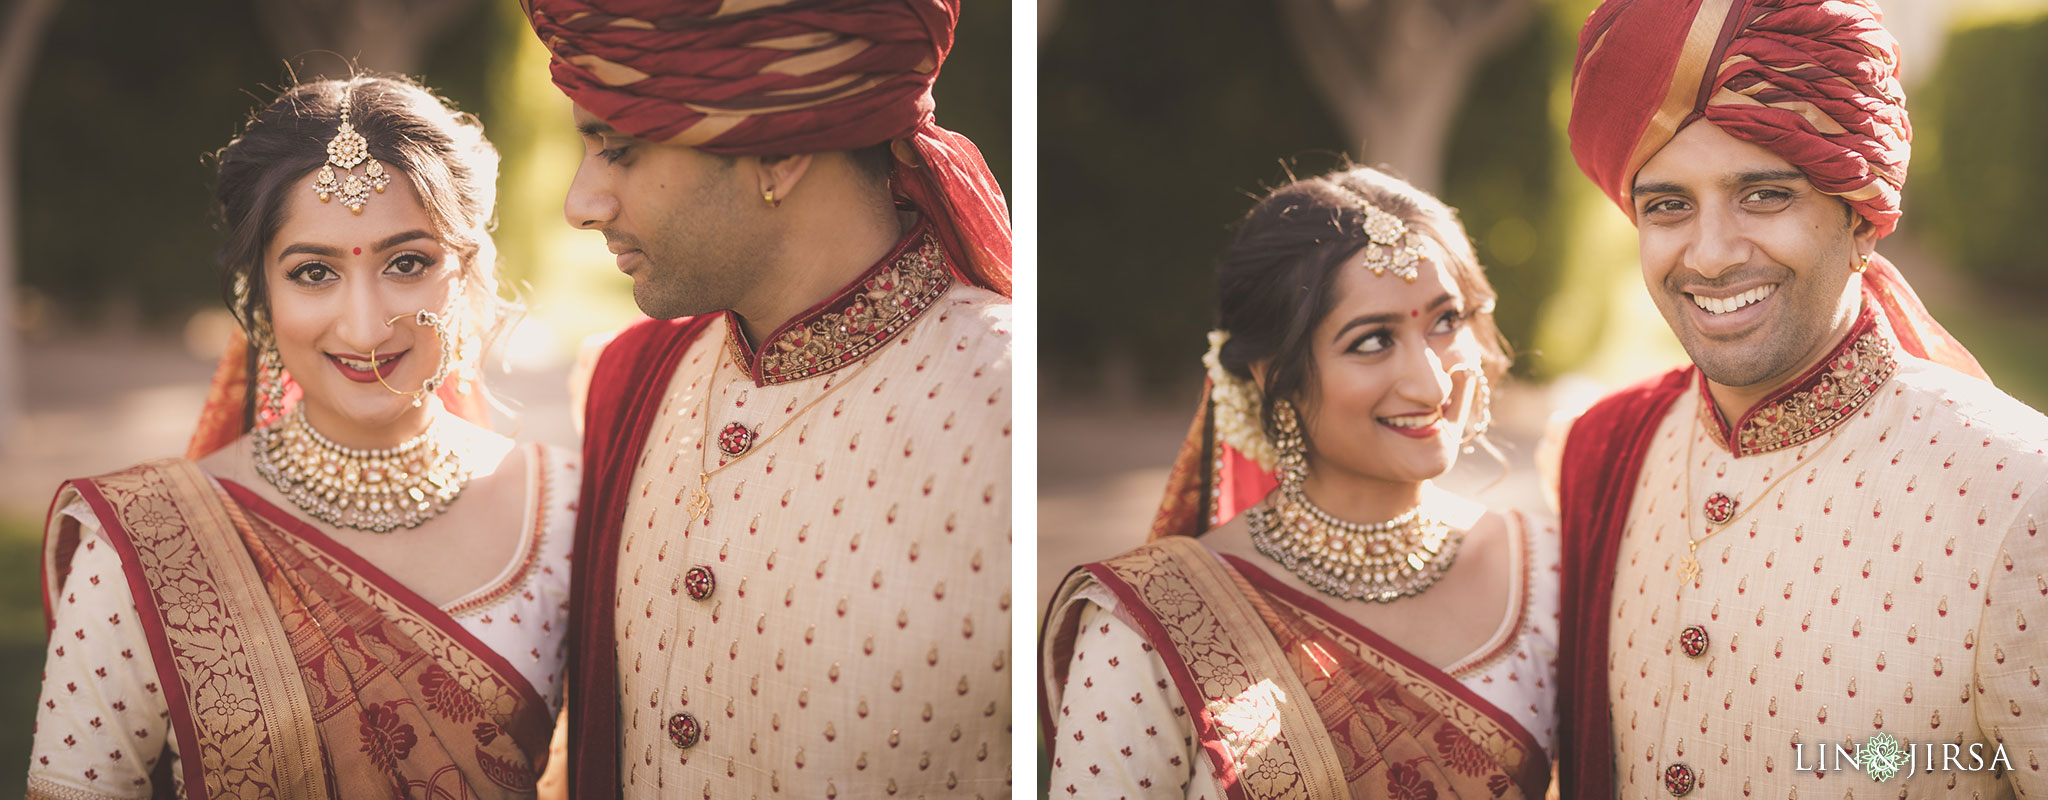 21 hotel irvine indian wedding photography